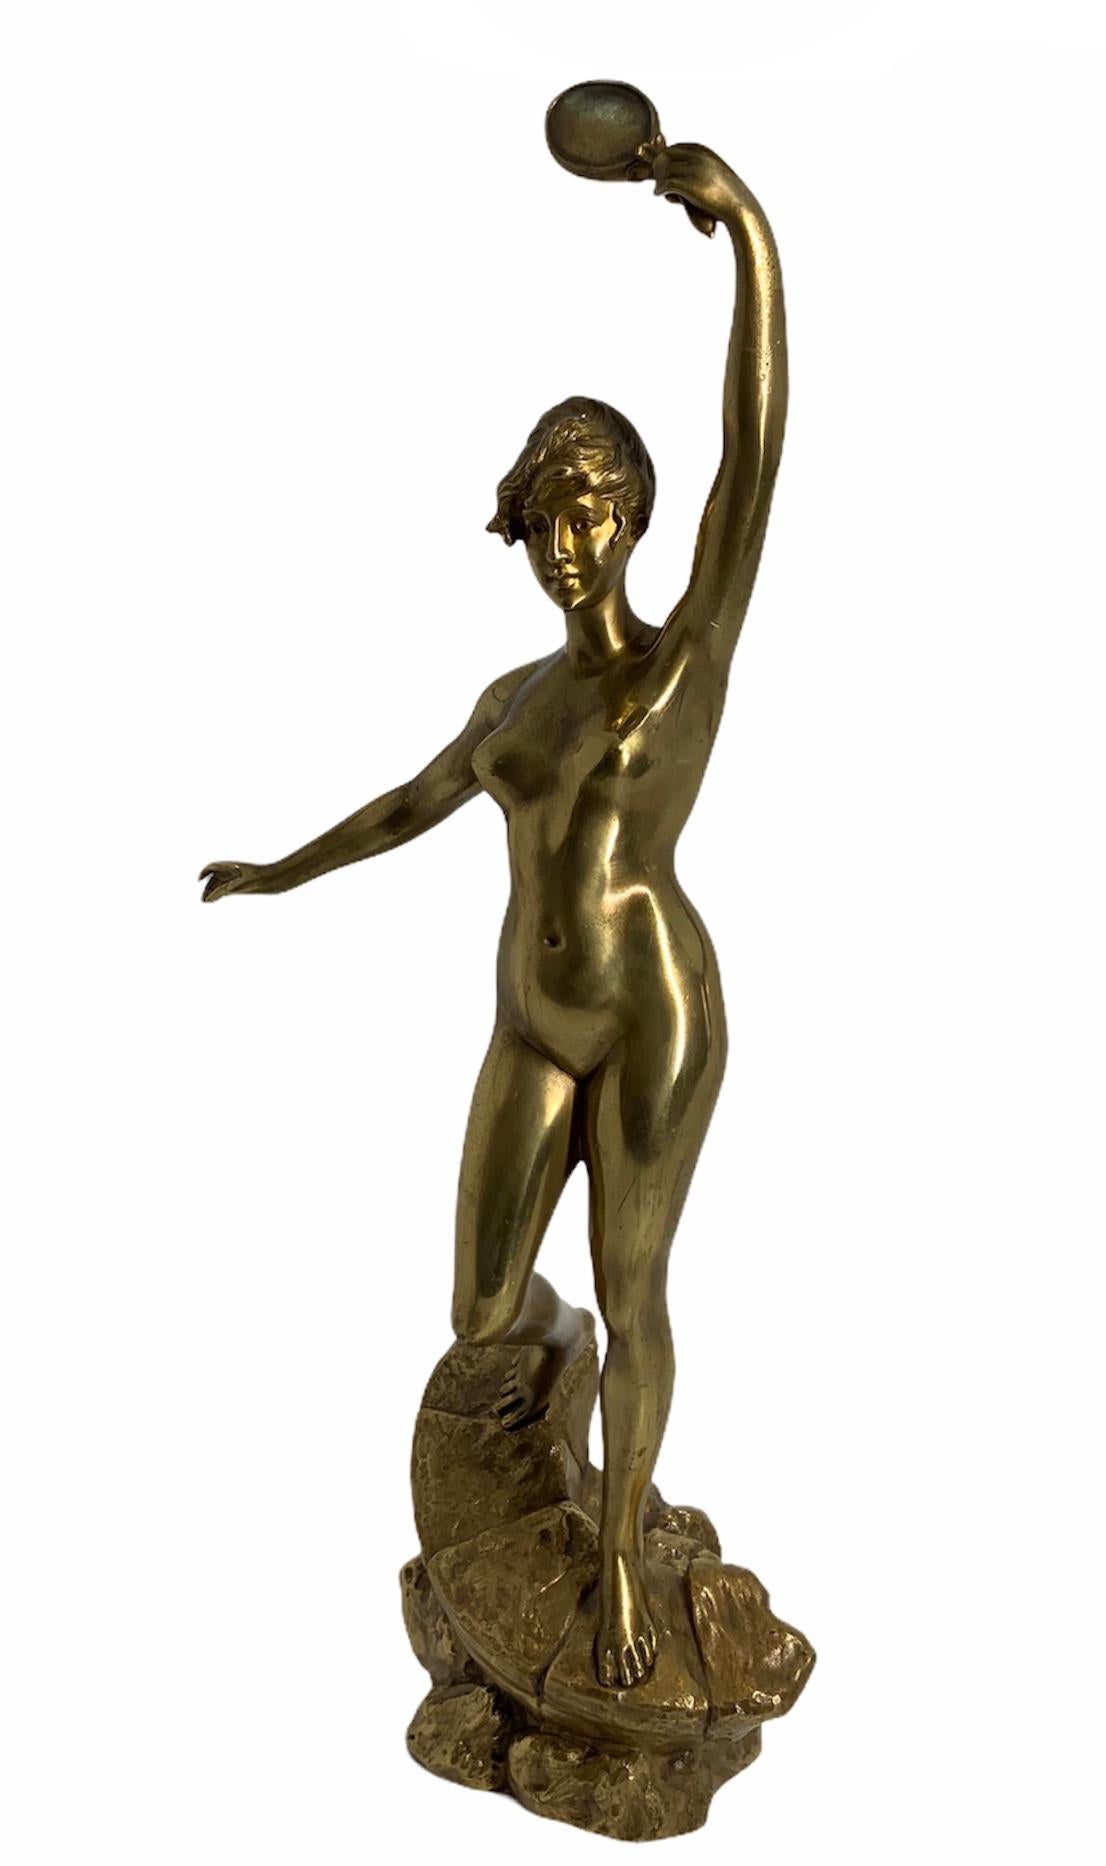 Il s'agit d'une sculpture en bronze doré représentant une femme nue heureuse. Elle lève le bras/la main gauche et tient un miroir en se regardant dedans. Elle se tient au-dessus d'un rocher en forme de pente, au-dessus d'un autre rocher. La